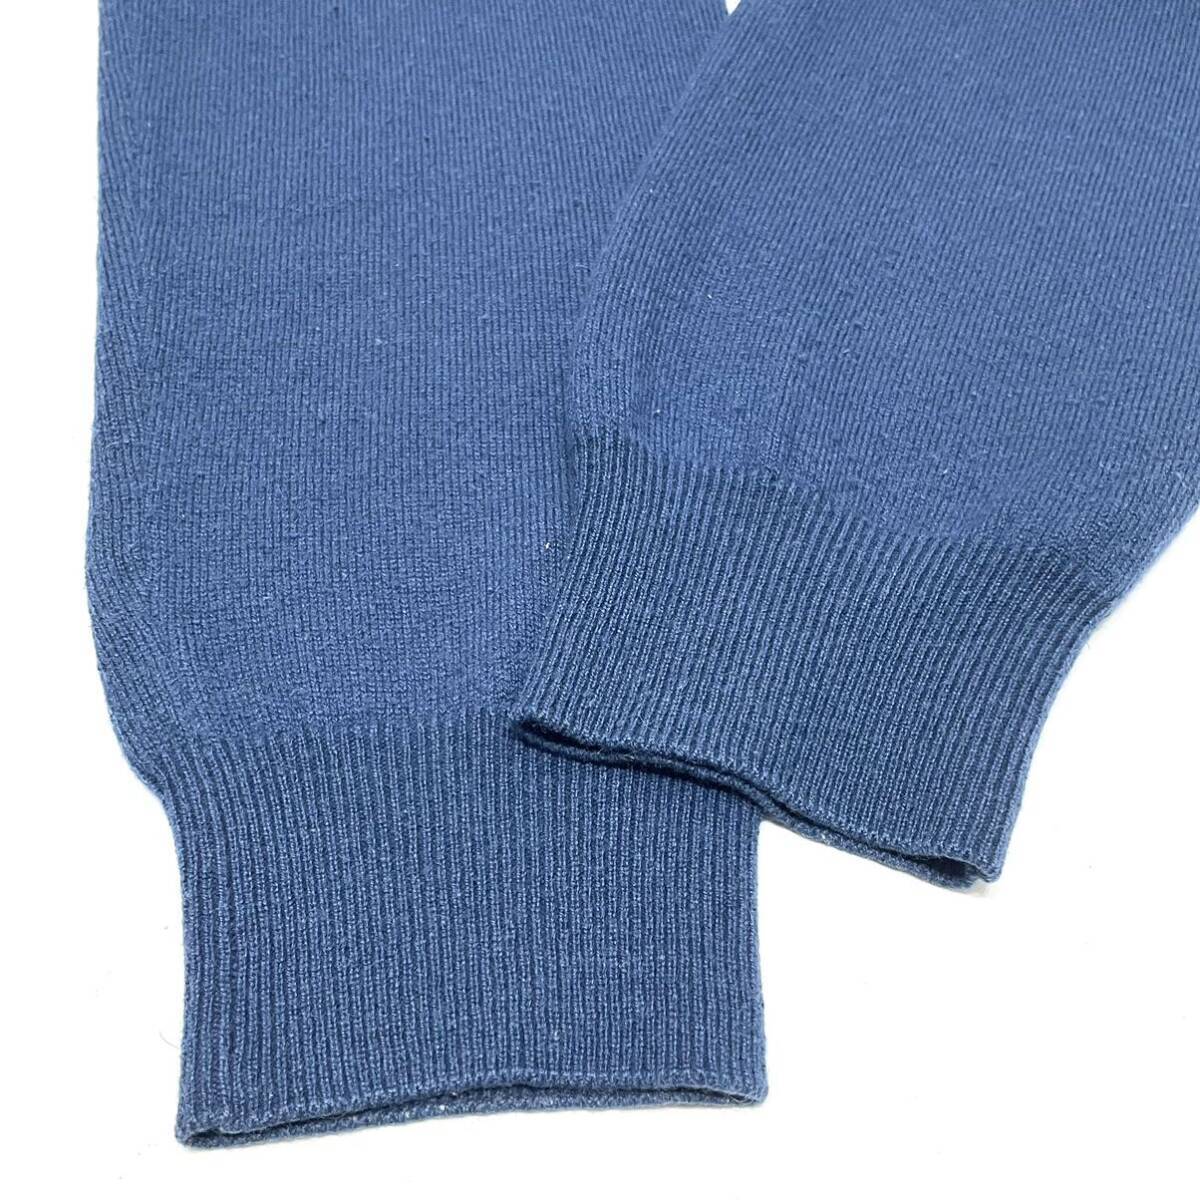 正規品 HERMES エルメス カシミヤ100% ニット Vネック セーター 長袖 トップス cashmere knit sweater ネイビー L イタリア製 メンズ_画像6